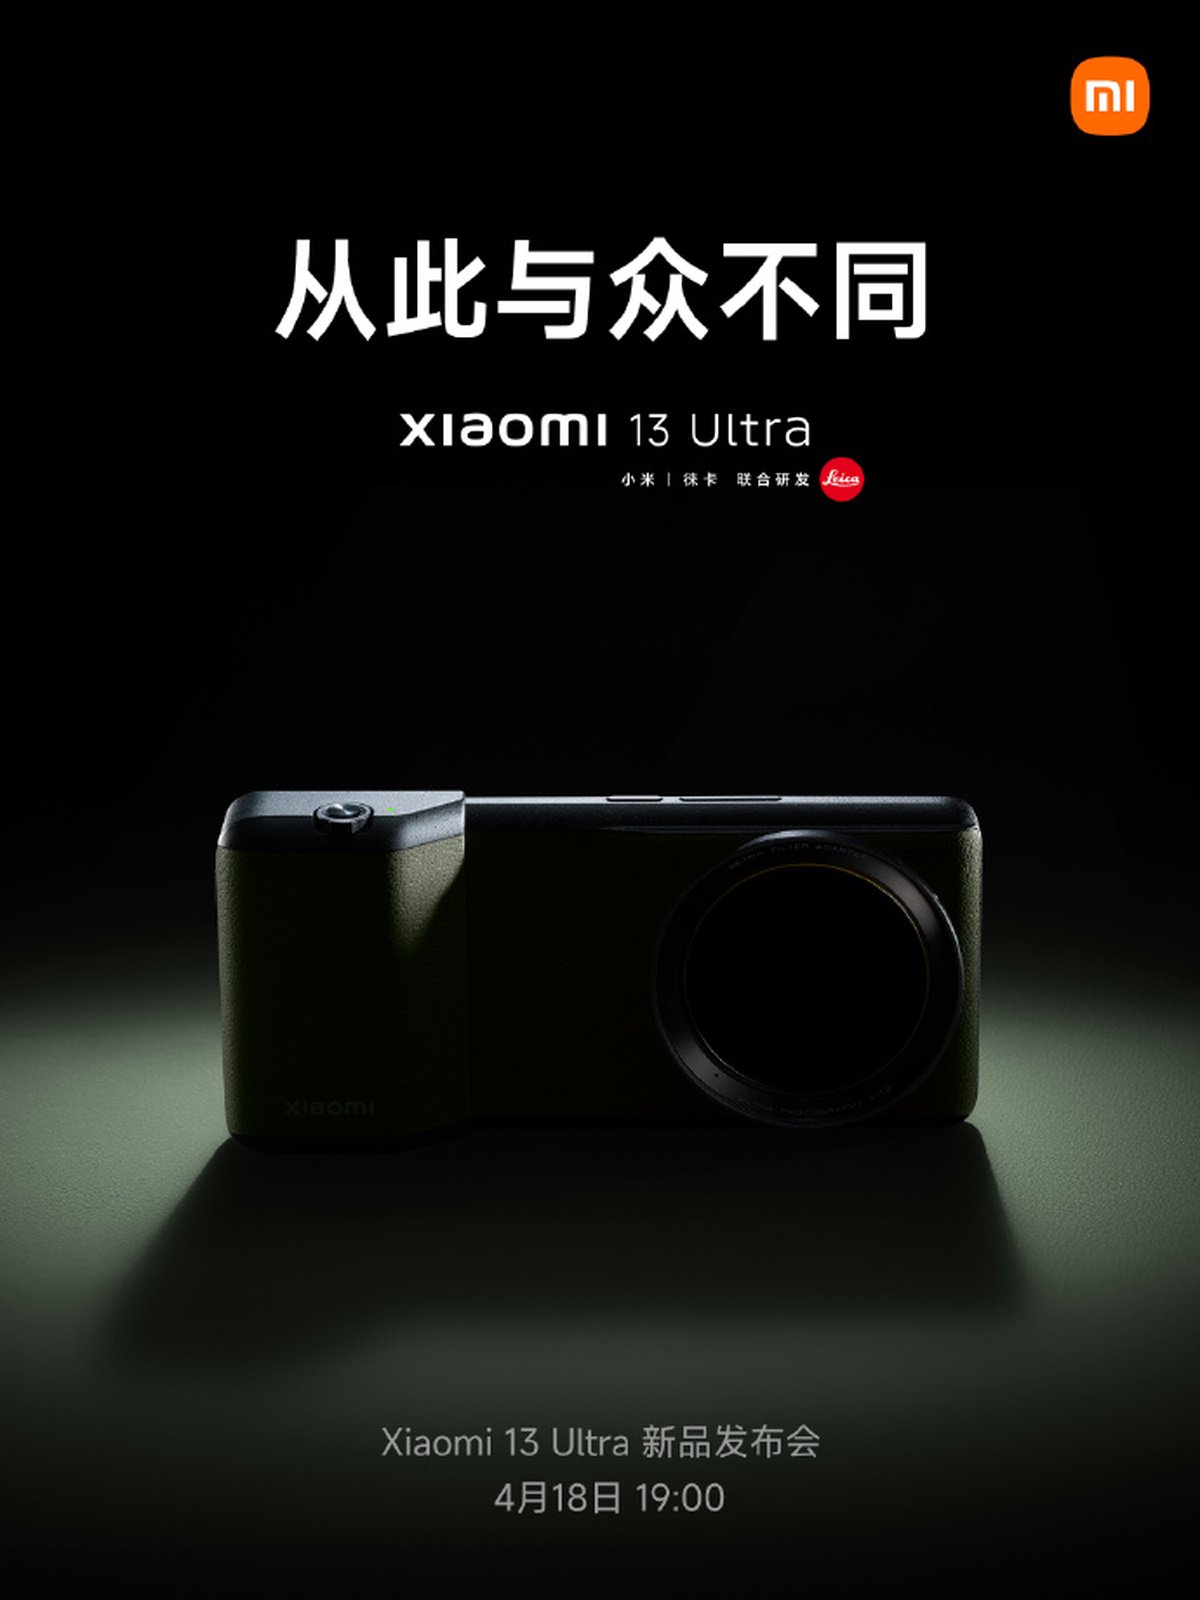 Imagem promocional destaca suposto acessório com botão obturador do Xiaomi 13 Ultra.